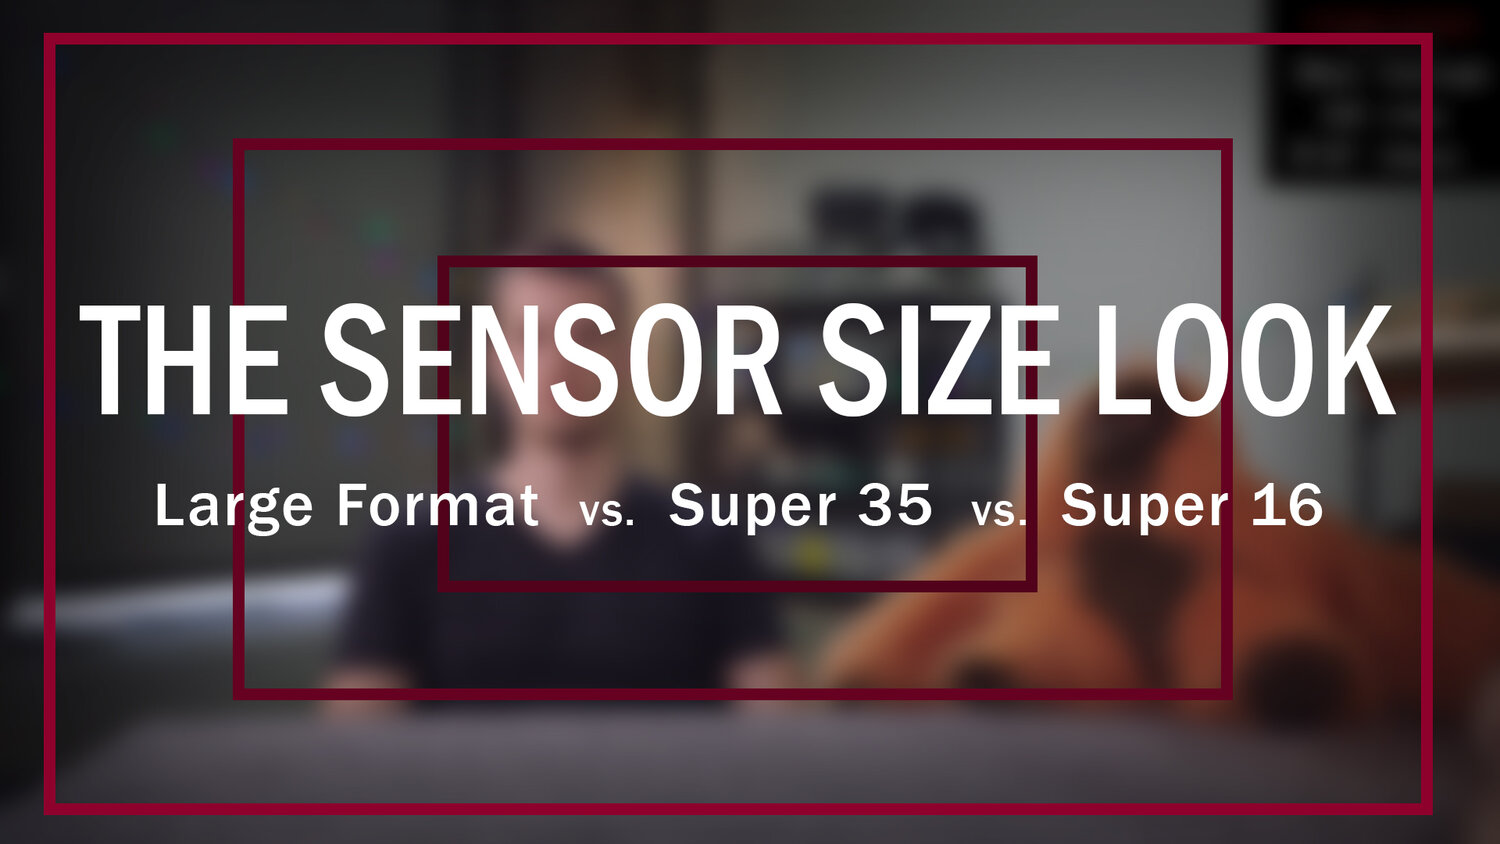 Interpreteren Hoes Immoraliteit Full Frame Cinematography • Large Format vs Super 35 vs Super 16 Sensor  Size Comparison — AUSTIN F. SCHMIDT • CINEMATOGRAPHER